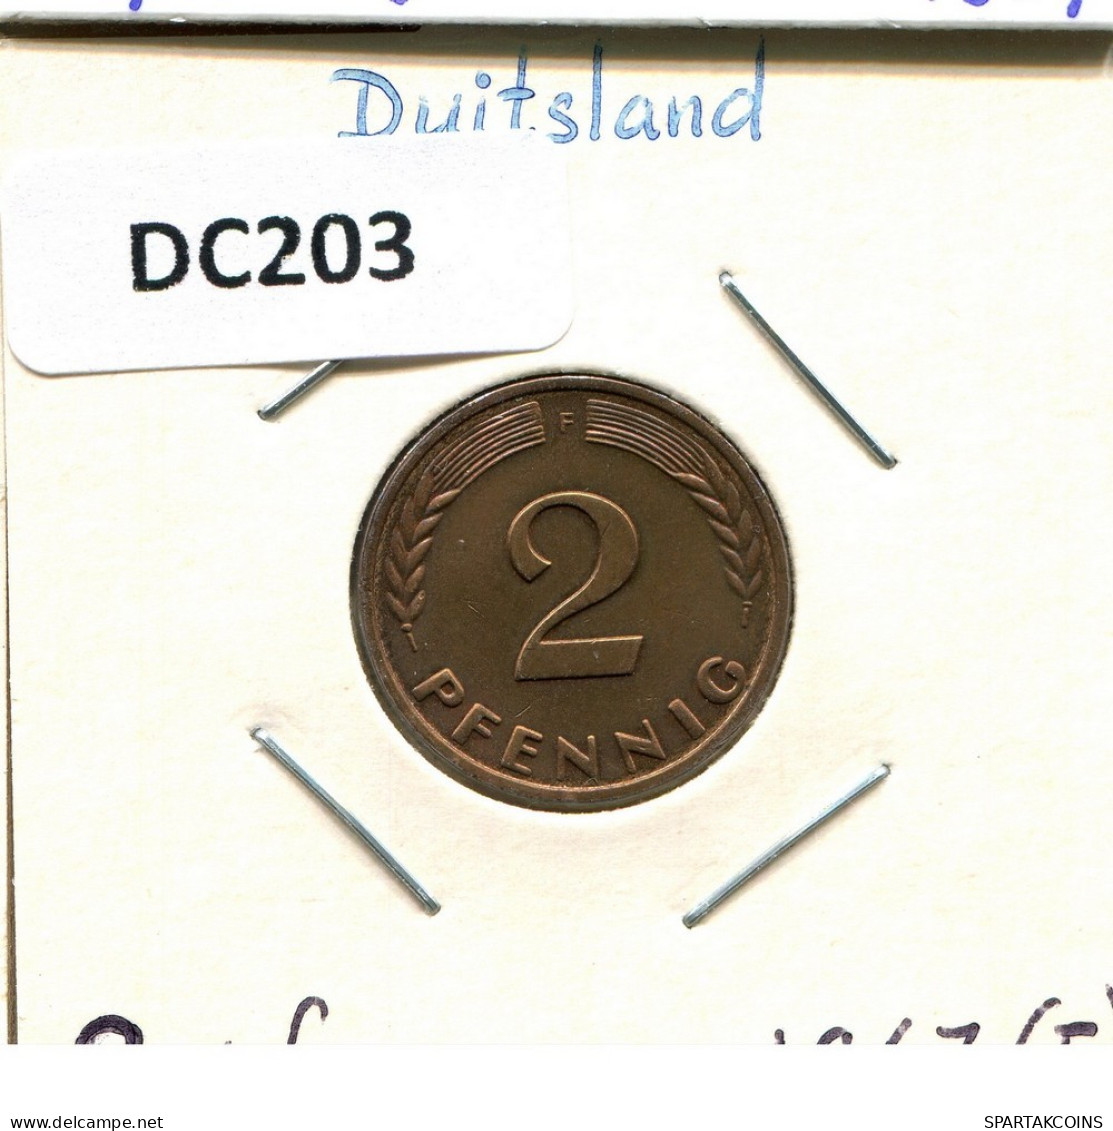 2 PFENNIG 1967 F BRD ALEMANIA Moneda GERMANY #DC203.E.A - 2 Pfennig